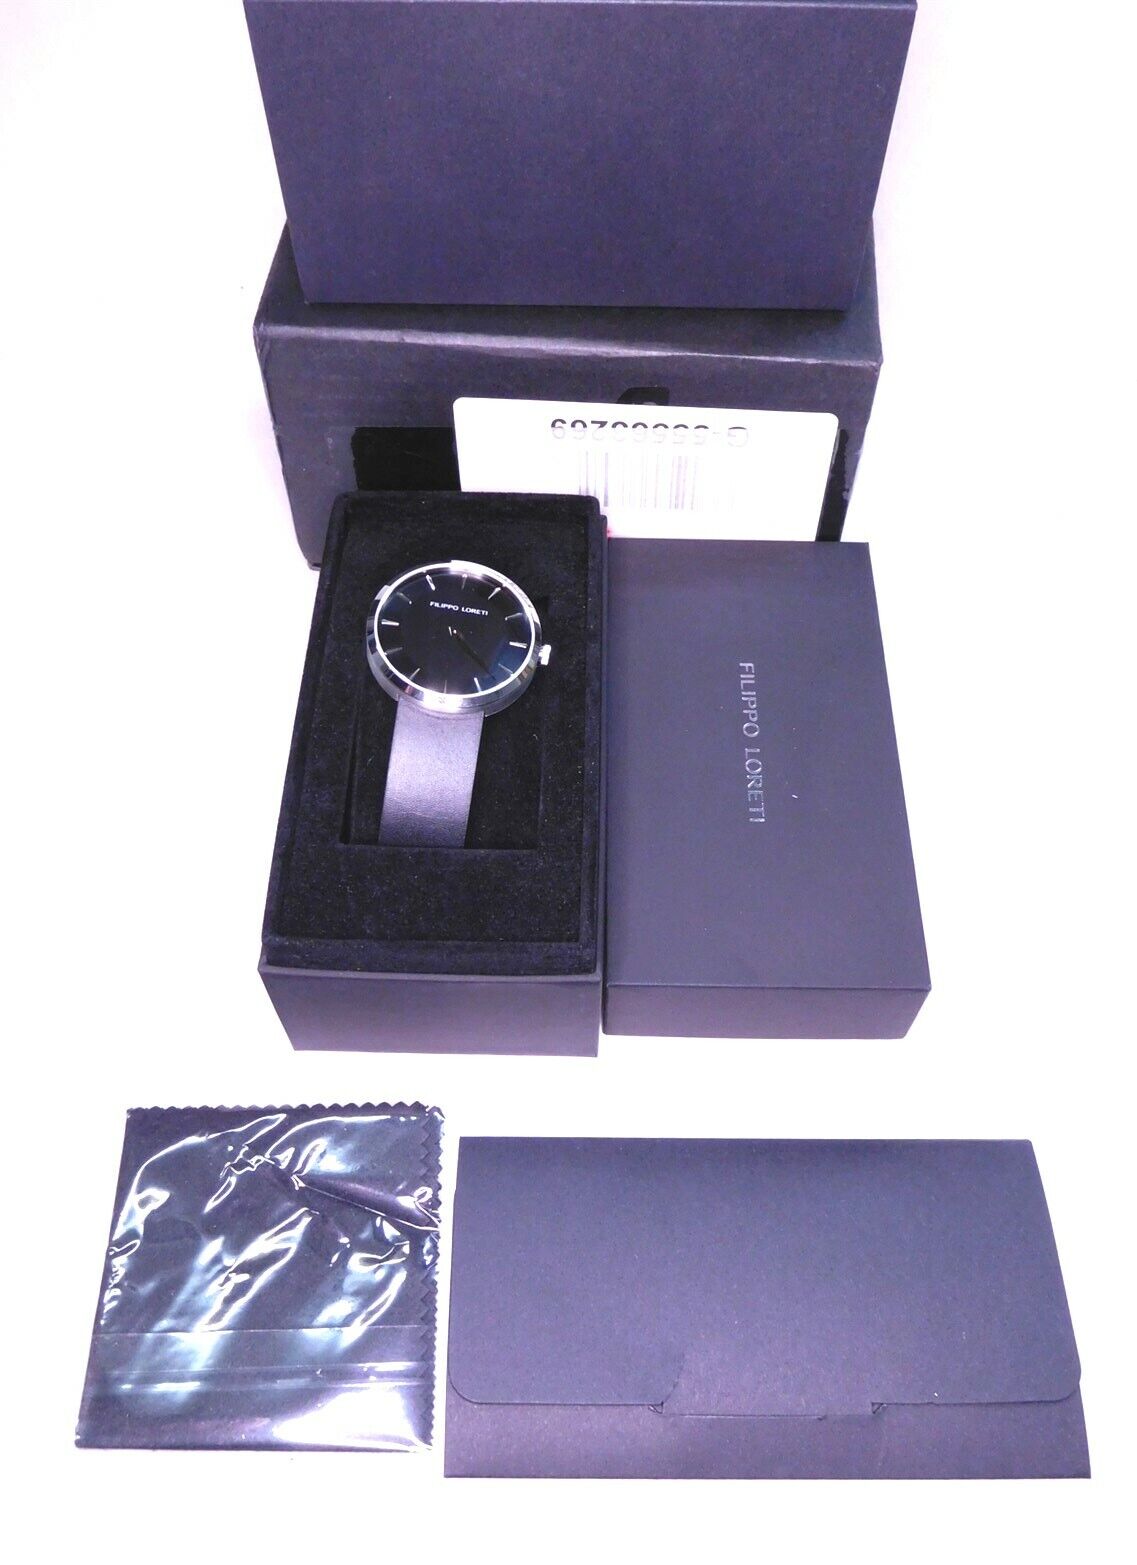 Filippo Loreti Wrist Watch Matte Black Leather Band Essence Edition.